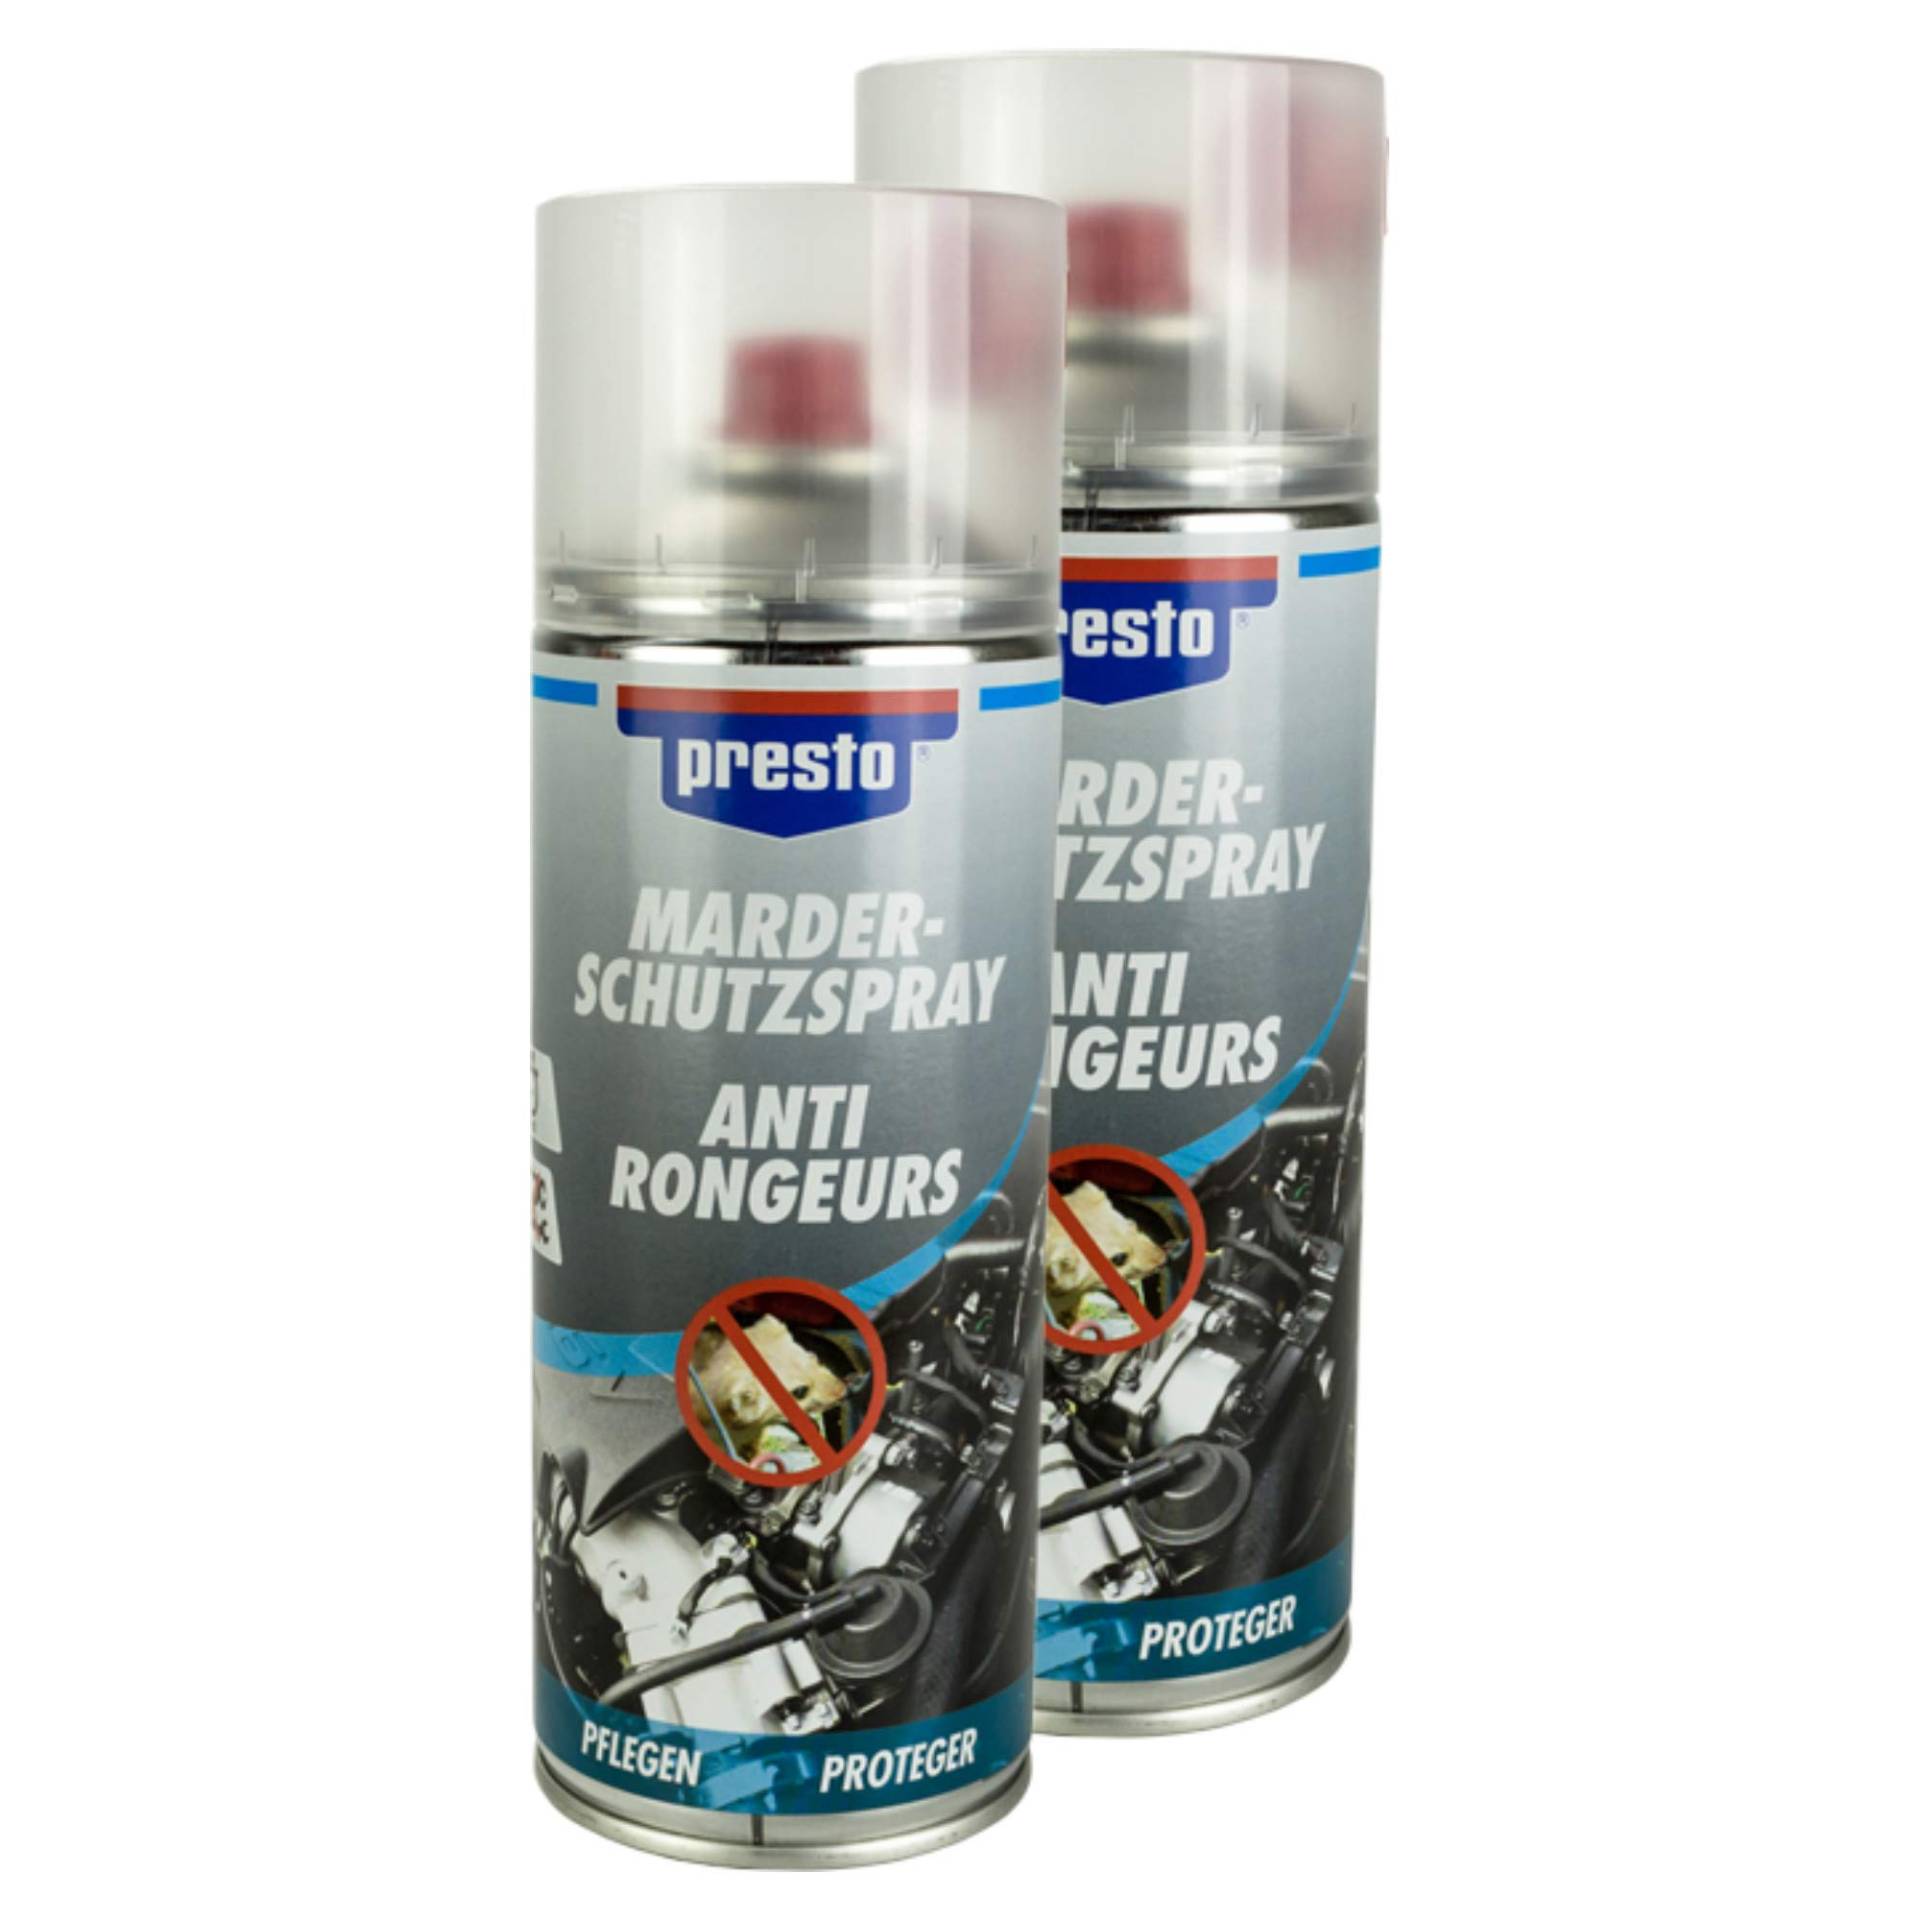 Presto 2X MARDERSCHUTZ-Spray MARDER Schutz Spray Kabel LEITUNGEN 400 ml 803857 von Presto